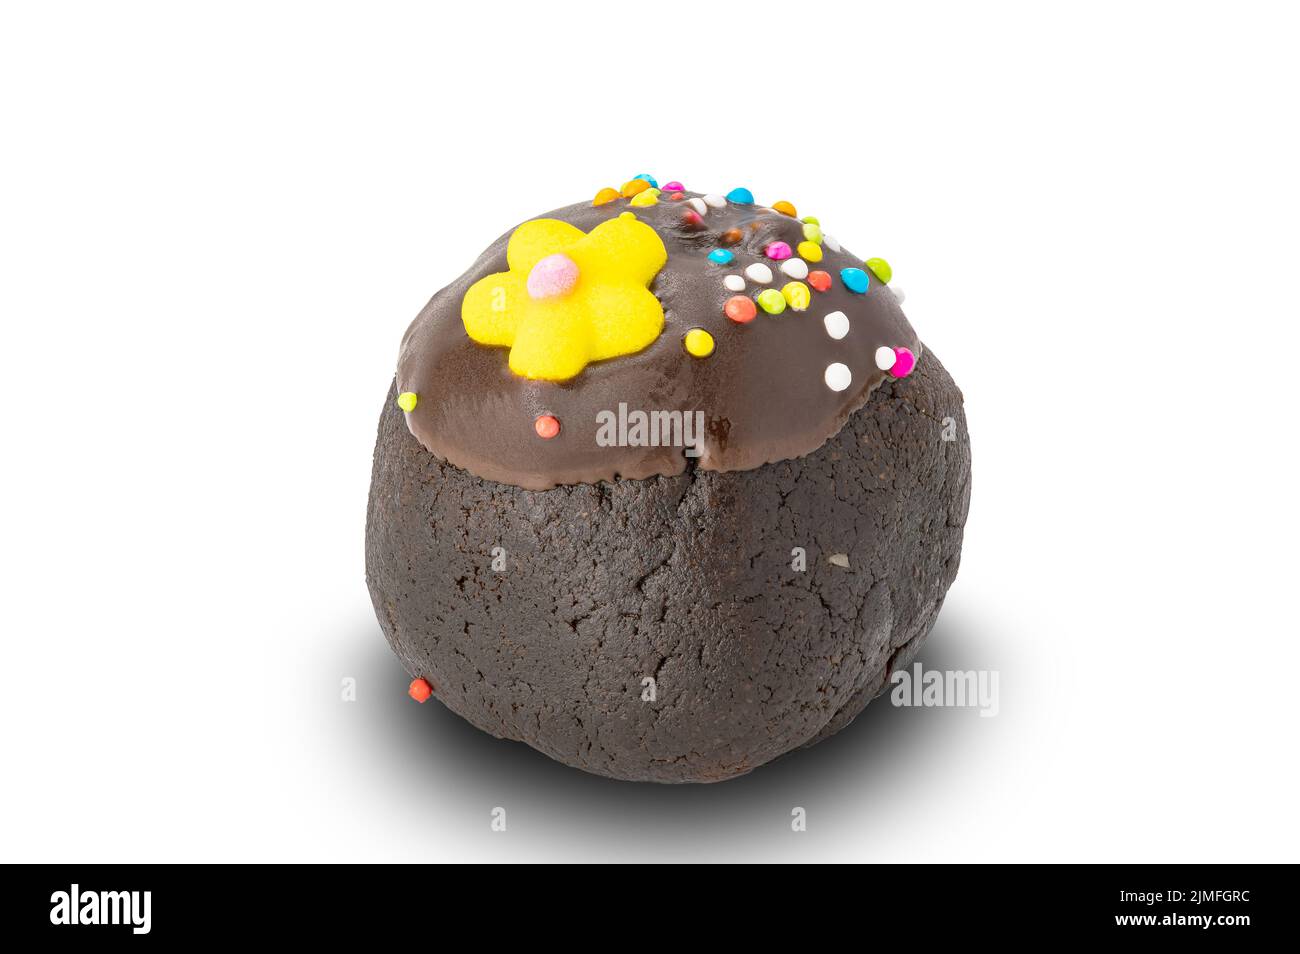 Vista laterale del bordo di una pallina di cioccolato con spolverini di arcobaleno e fiore di zucchero giallo. Foto Stock